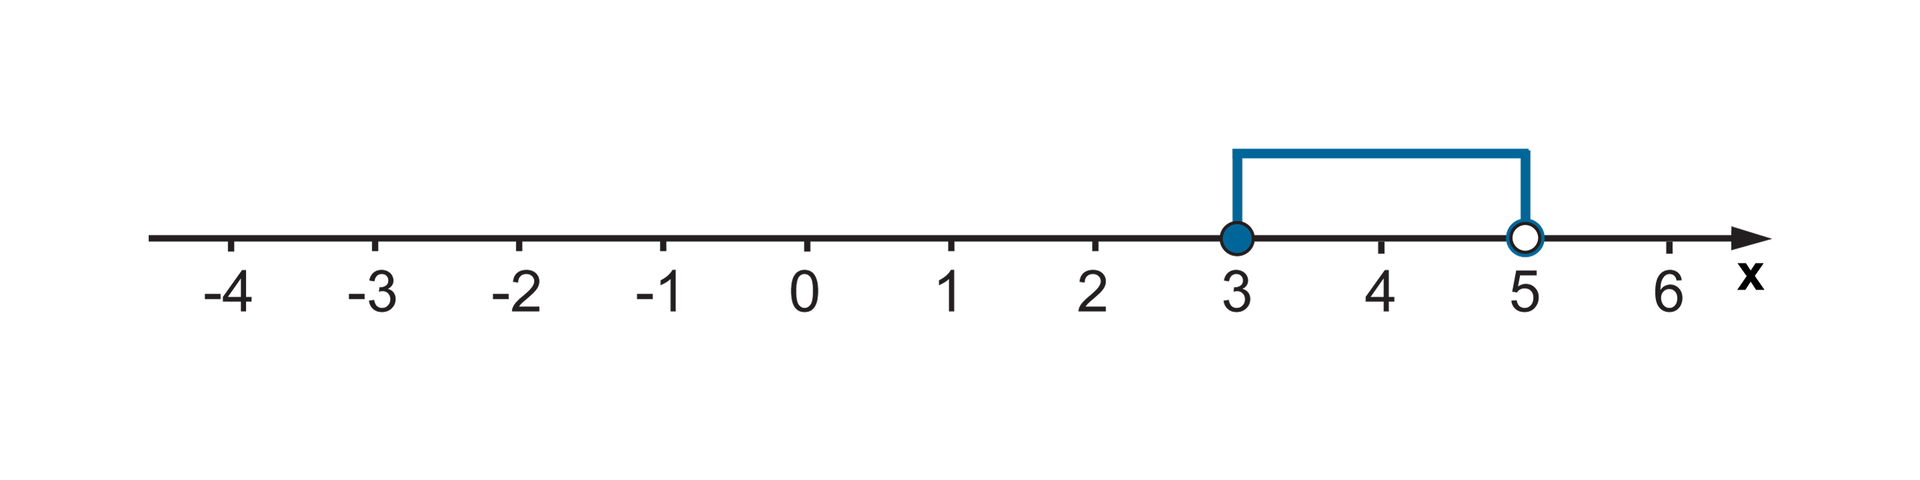 Zaznaczamy przedział poziomą linią od trzech do pięciu. Liczbę 3 zaznaczamy zamalowanym kółkiem, a liczbę 5 zaznaczamy niezamalowanym kółkiem.